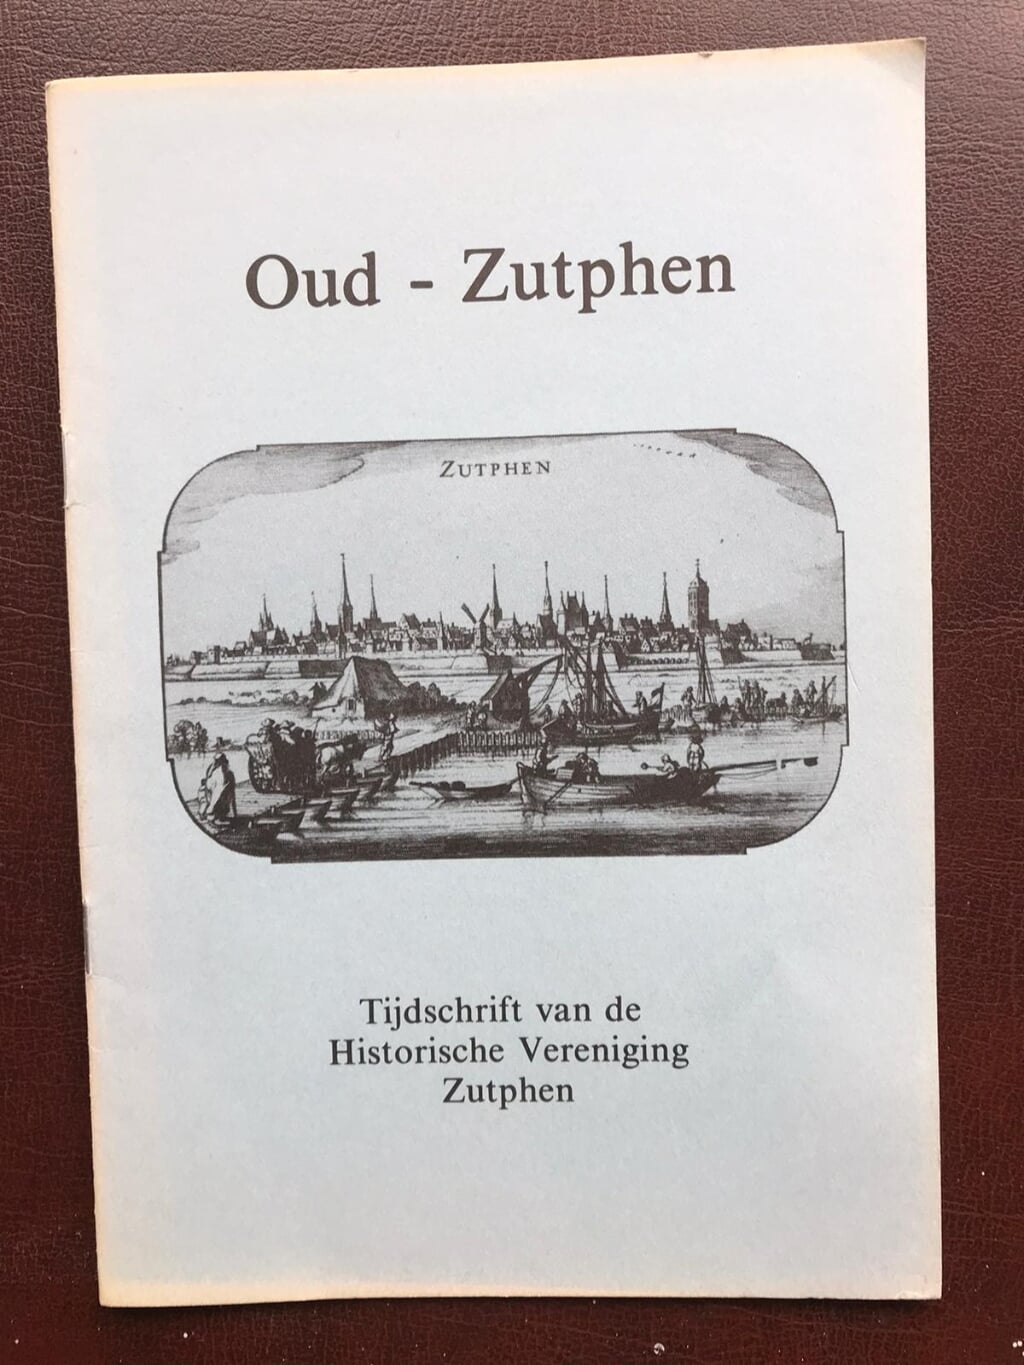 De omslag van het eerste tijdschrift van de eind 1981 opgerichte Historische Vereniging Zutphen. Foto: Adriaan van Oosten